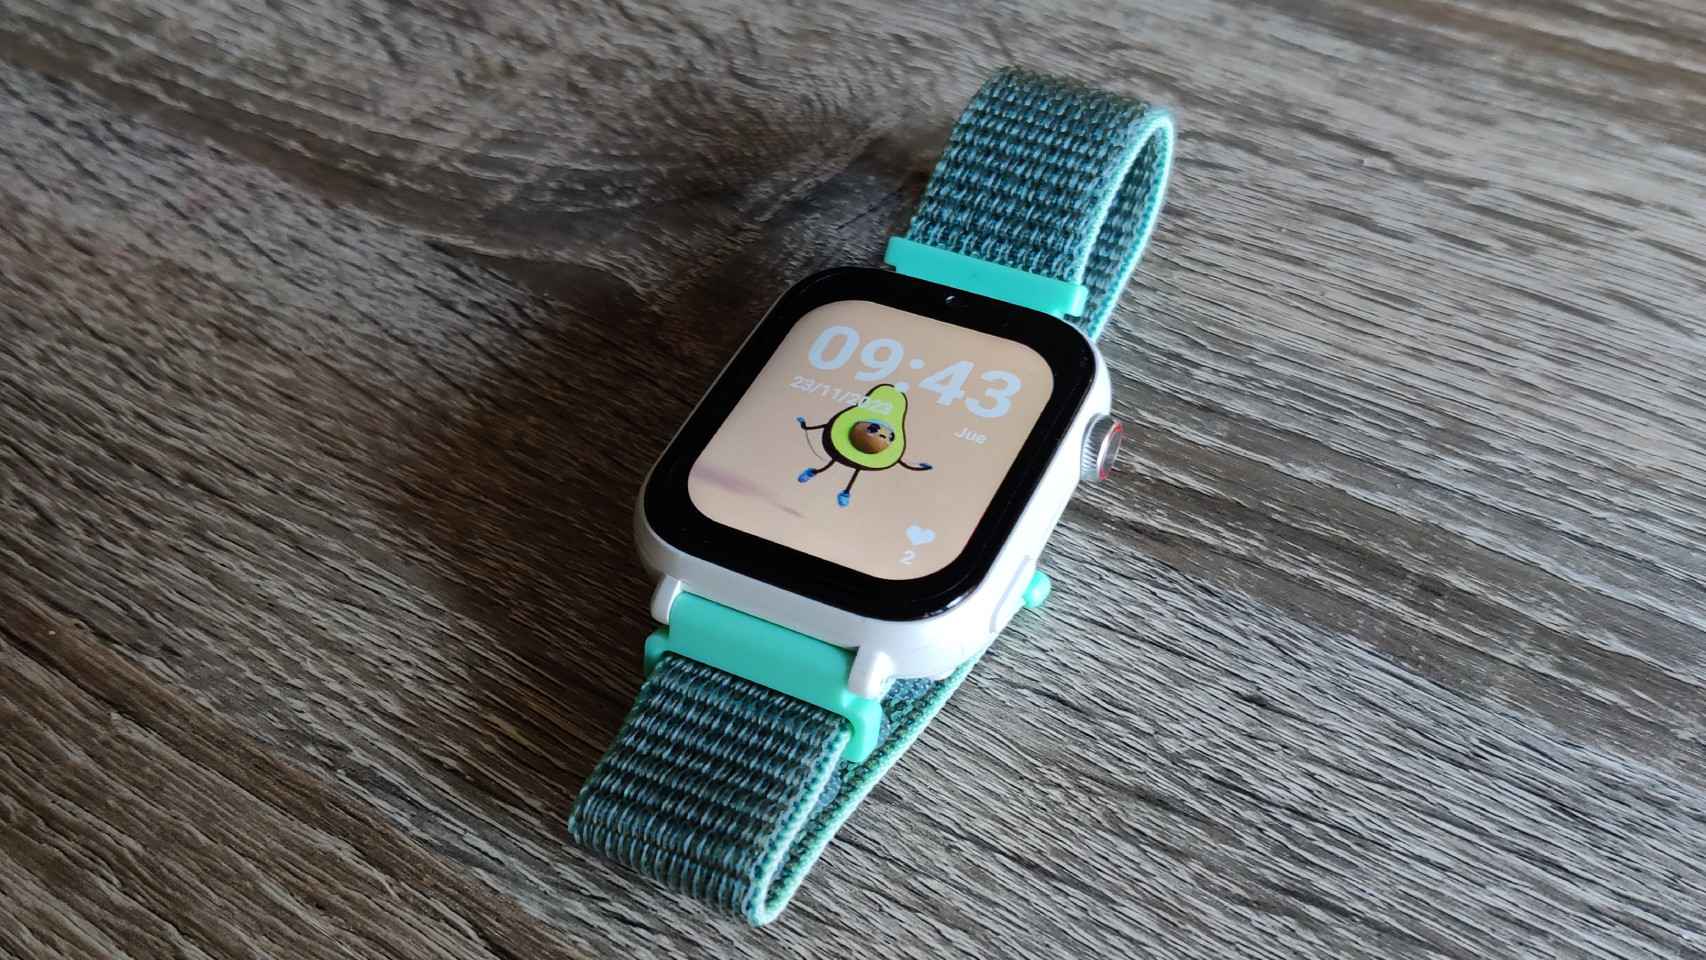 Para los pequeños de la casa, el smartwatch SaveFamily es un gran